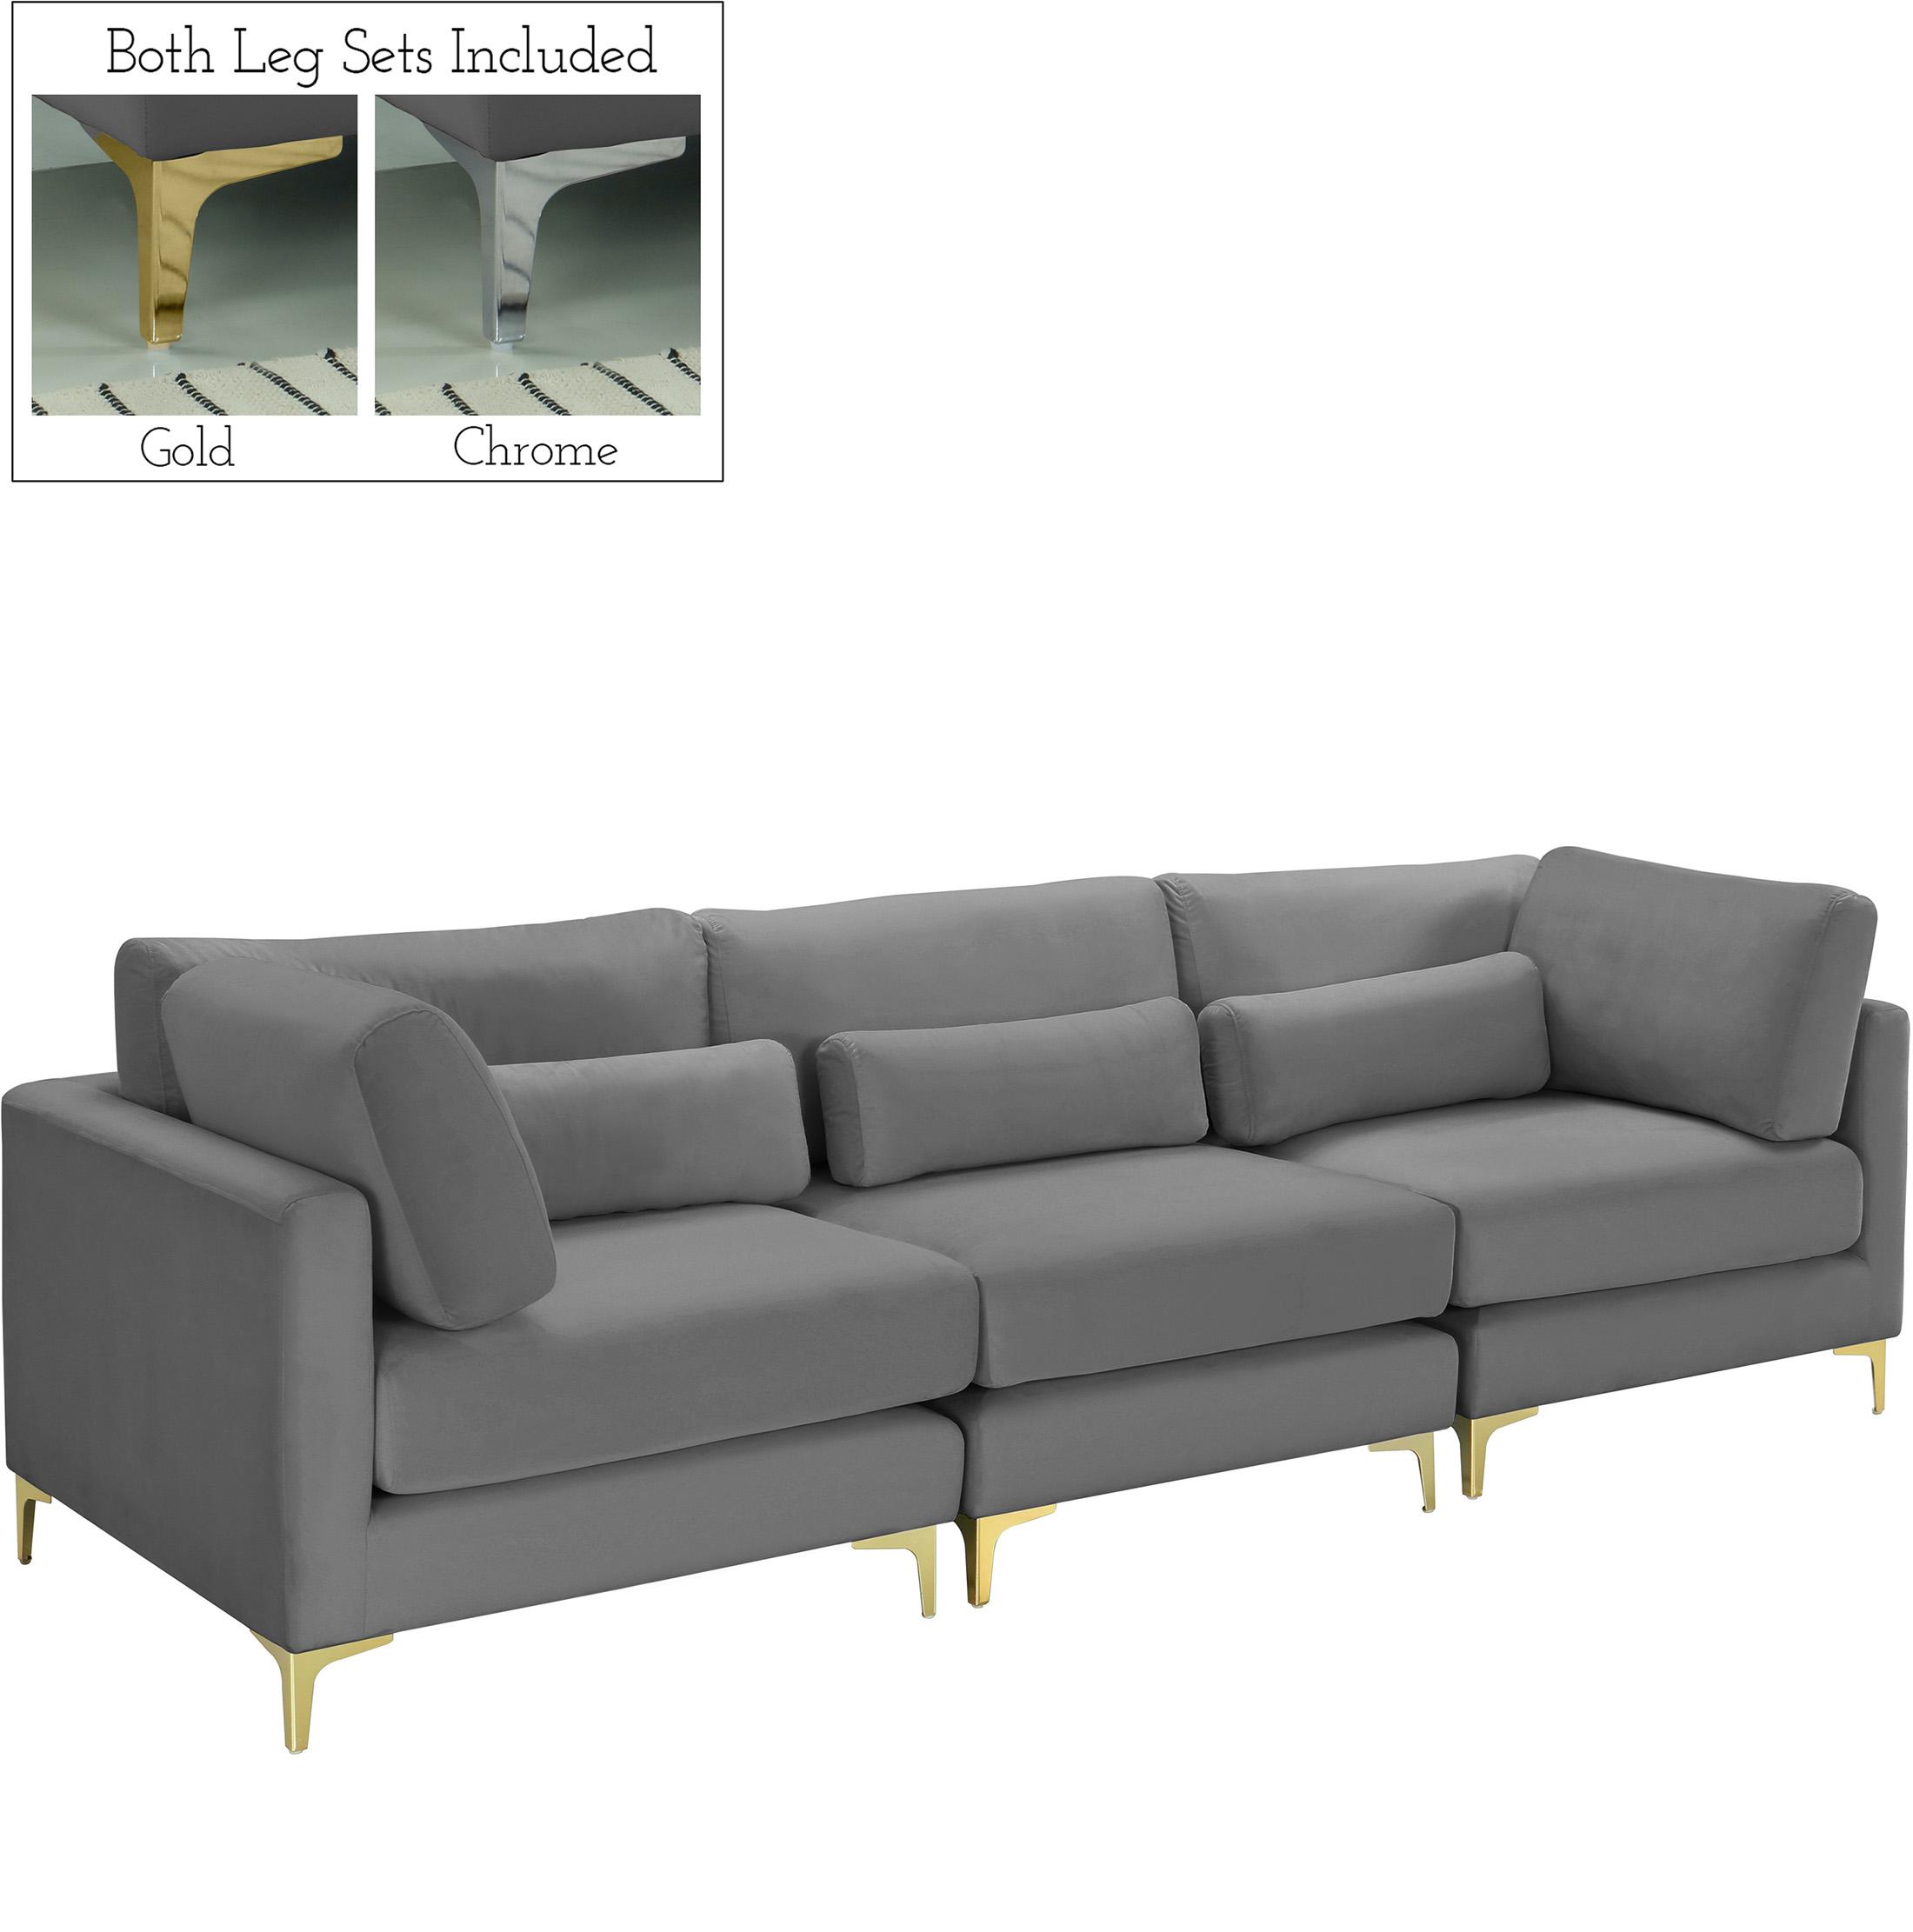 Contemporary, Modern Modular Sofa JULIA 605Grey-S108 605Grey-S108 in Gray Velvet